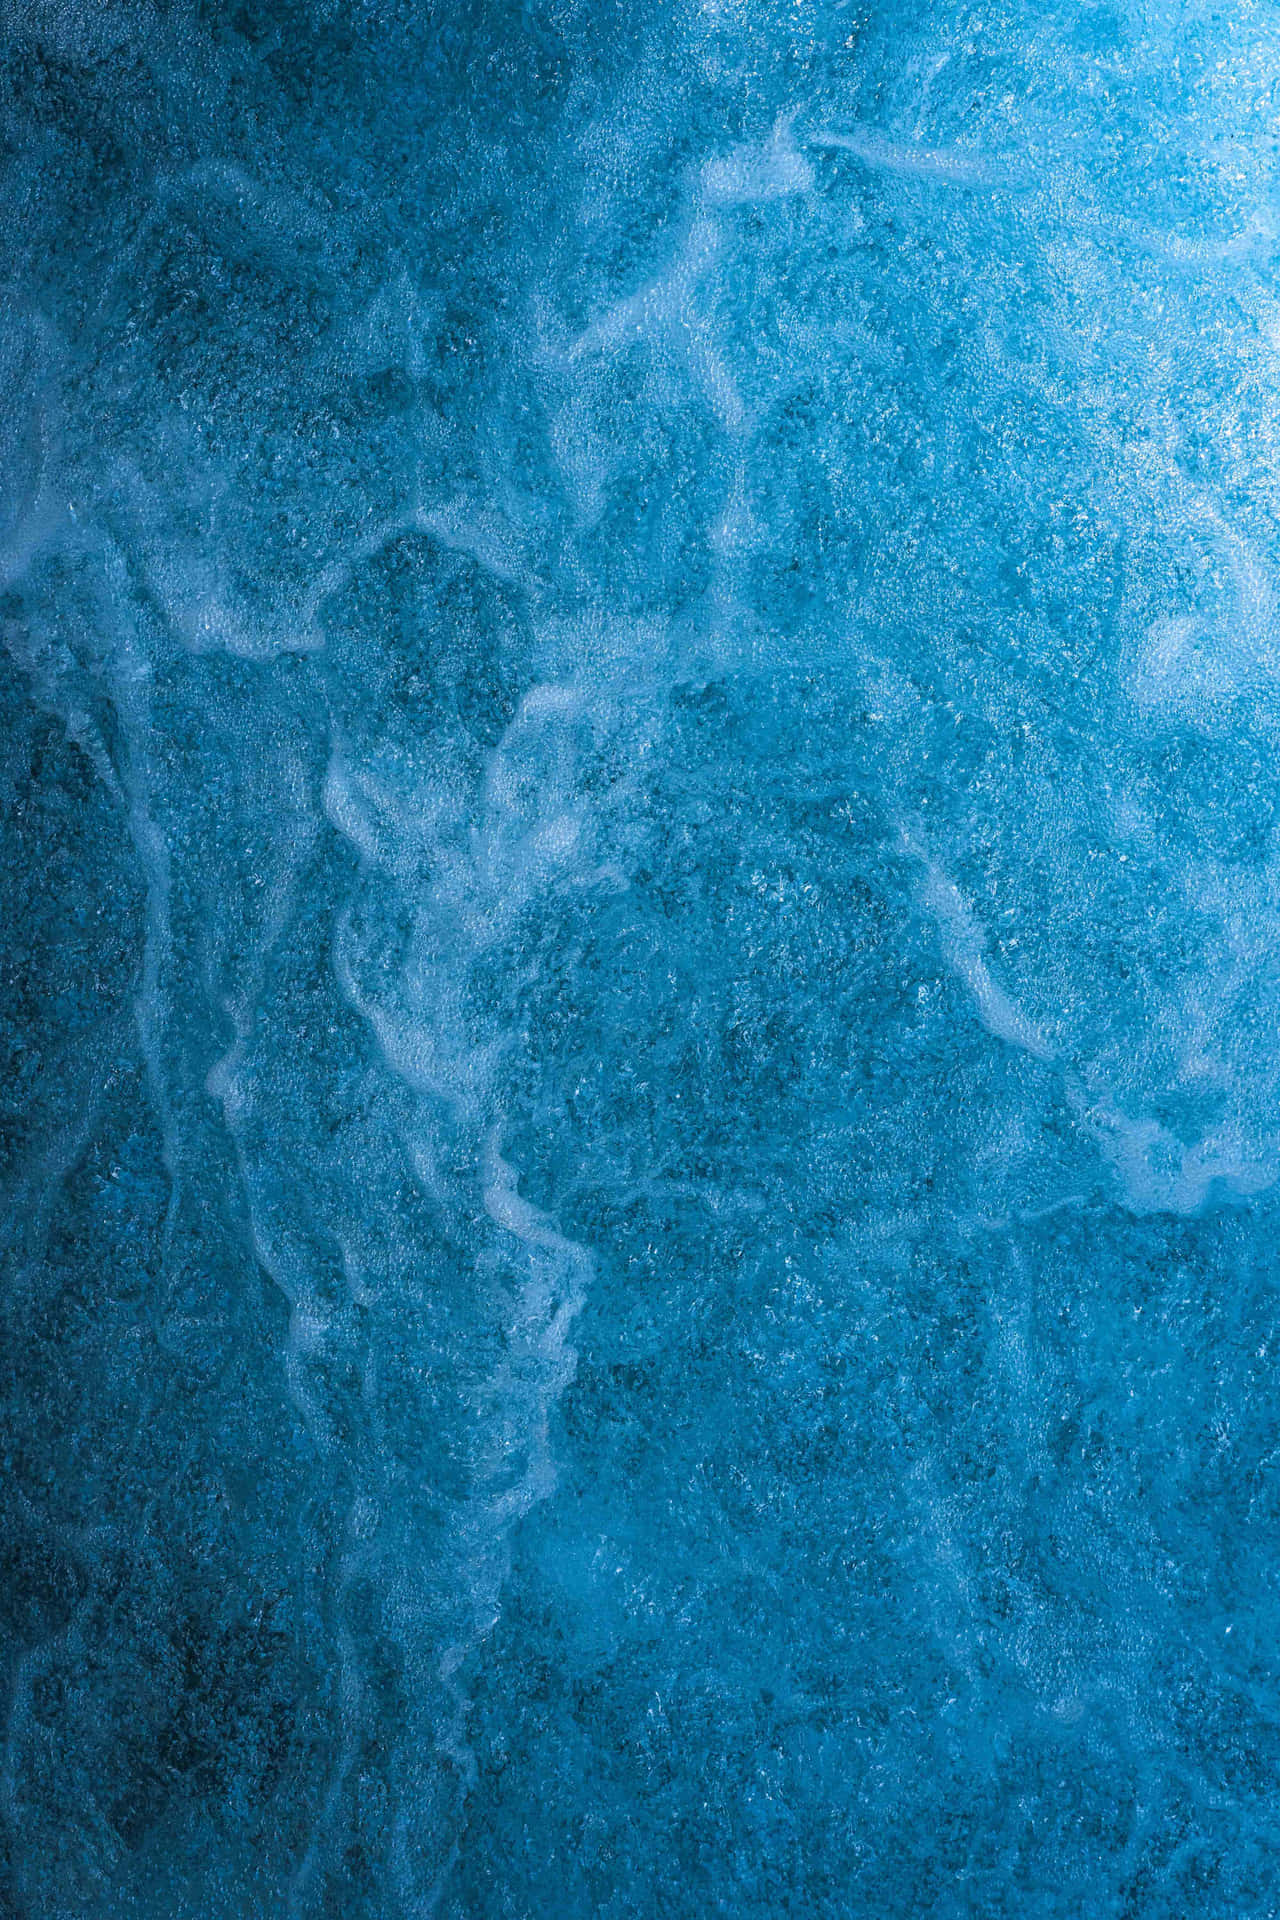 Blue And Aqua Water Texture Picsart Background